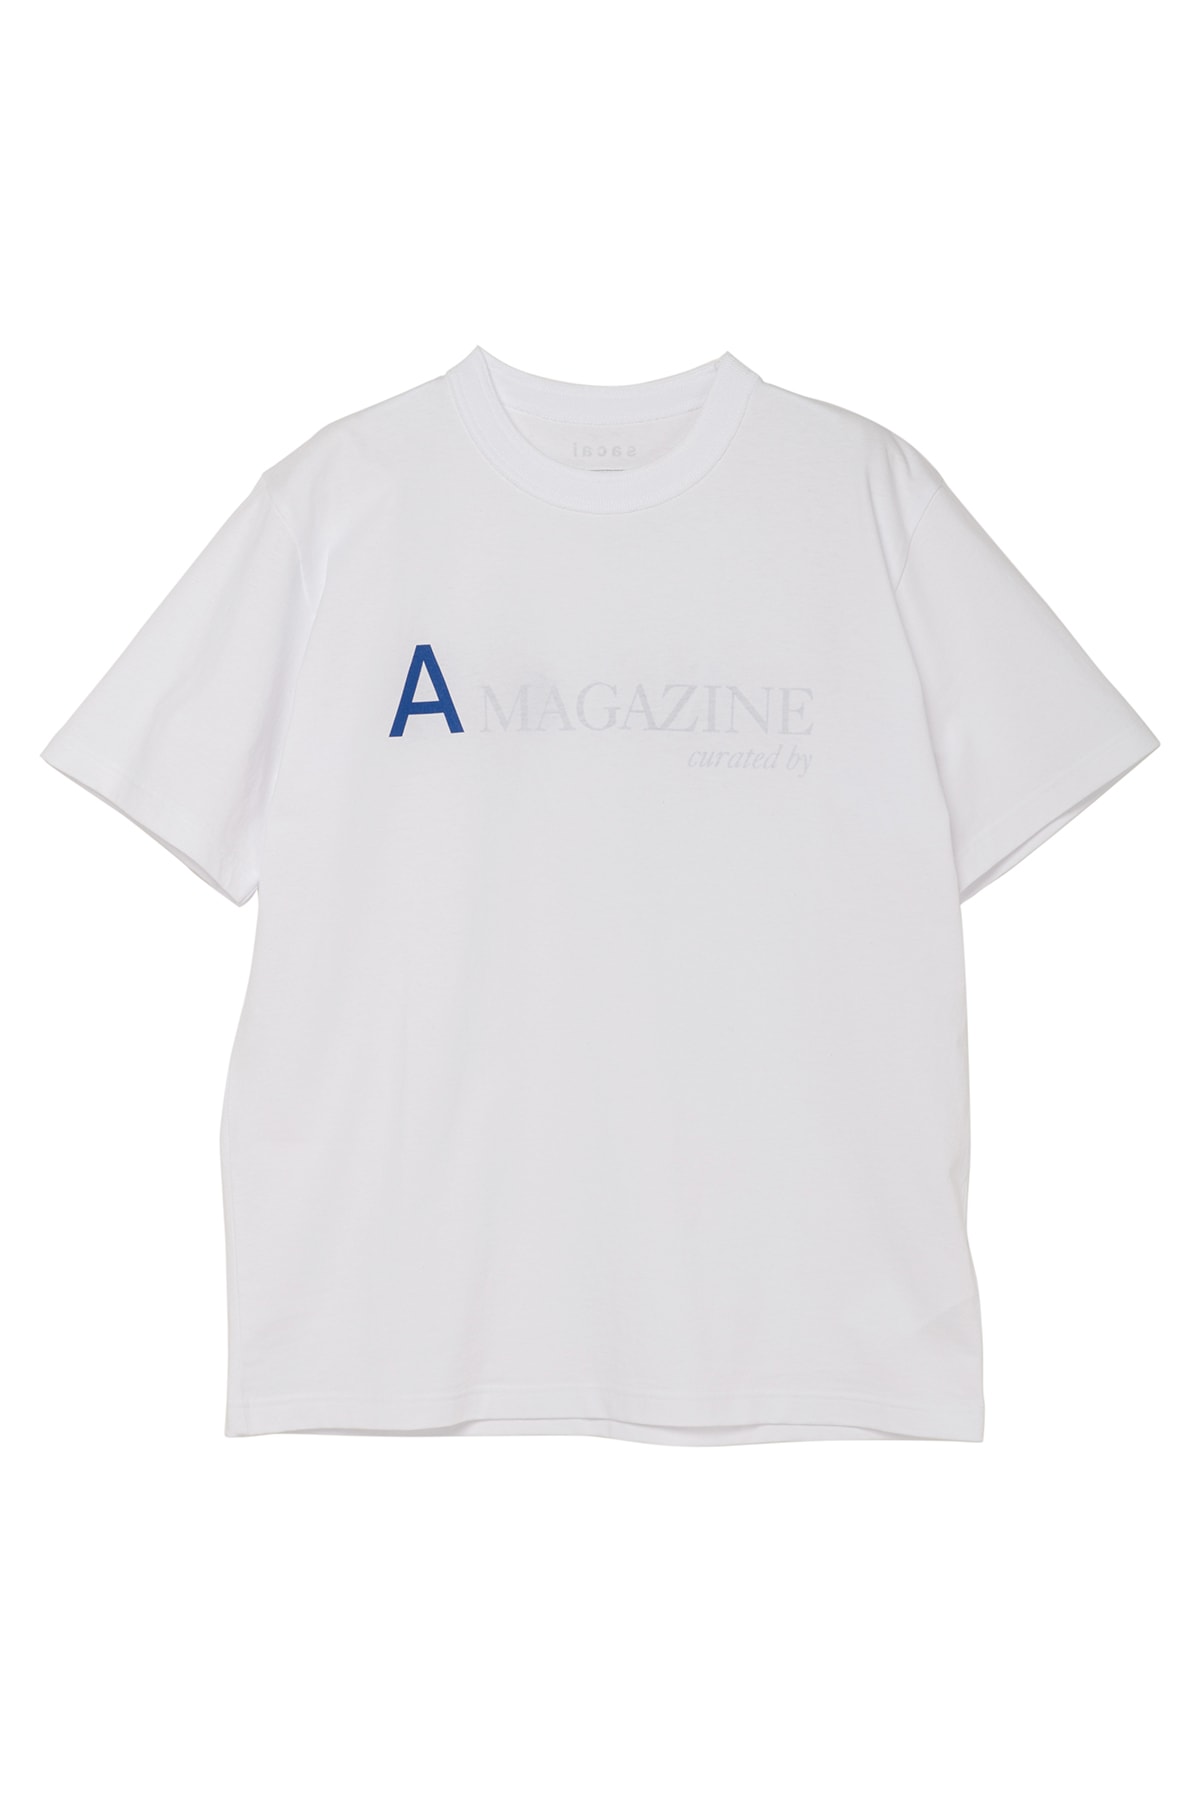 サカイから『a magazine curated by sacai』の限定 Tシャツが発売 A MAGAZINE curated by sacai limited T-shirts release info